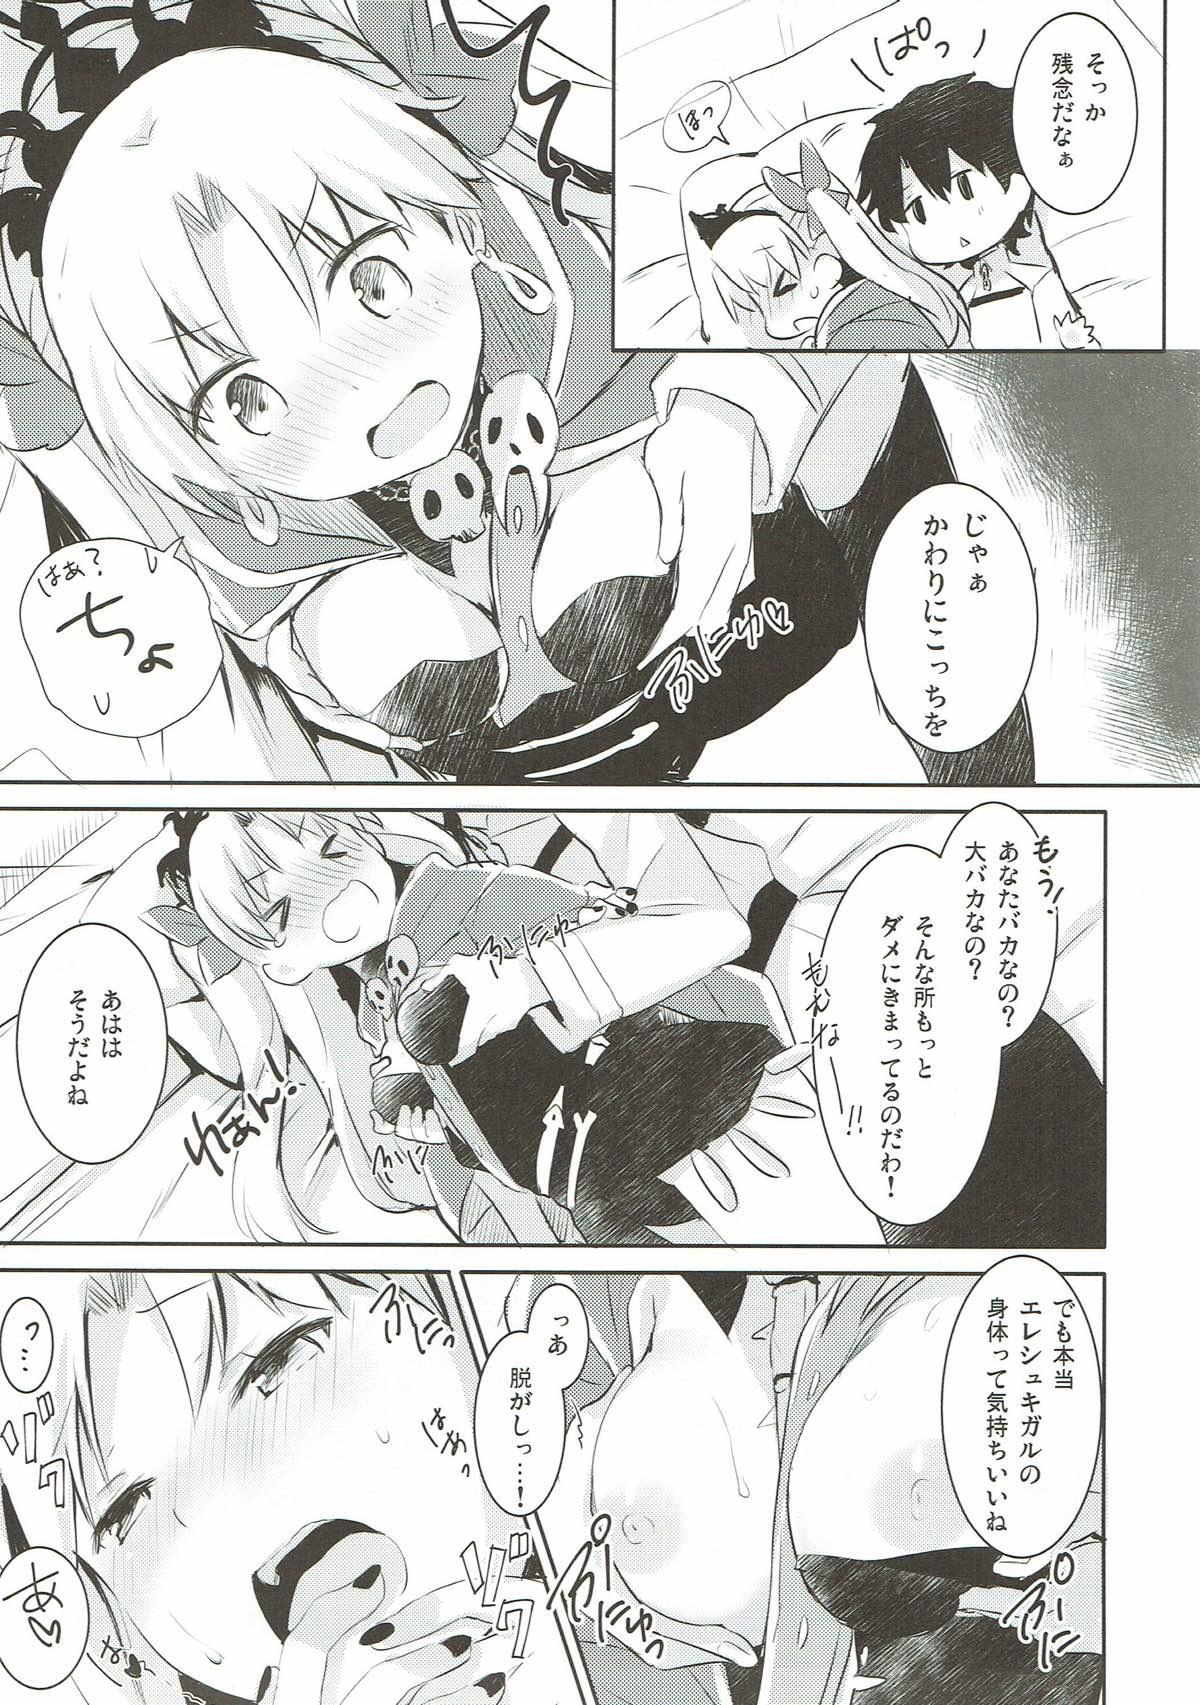 Granny Sukisuki! Ereshkigal! - Fate grand order Masseuse - Page 9